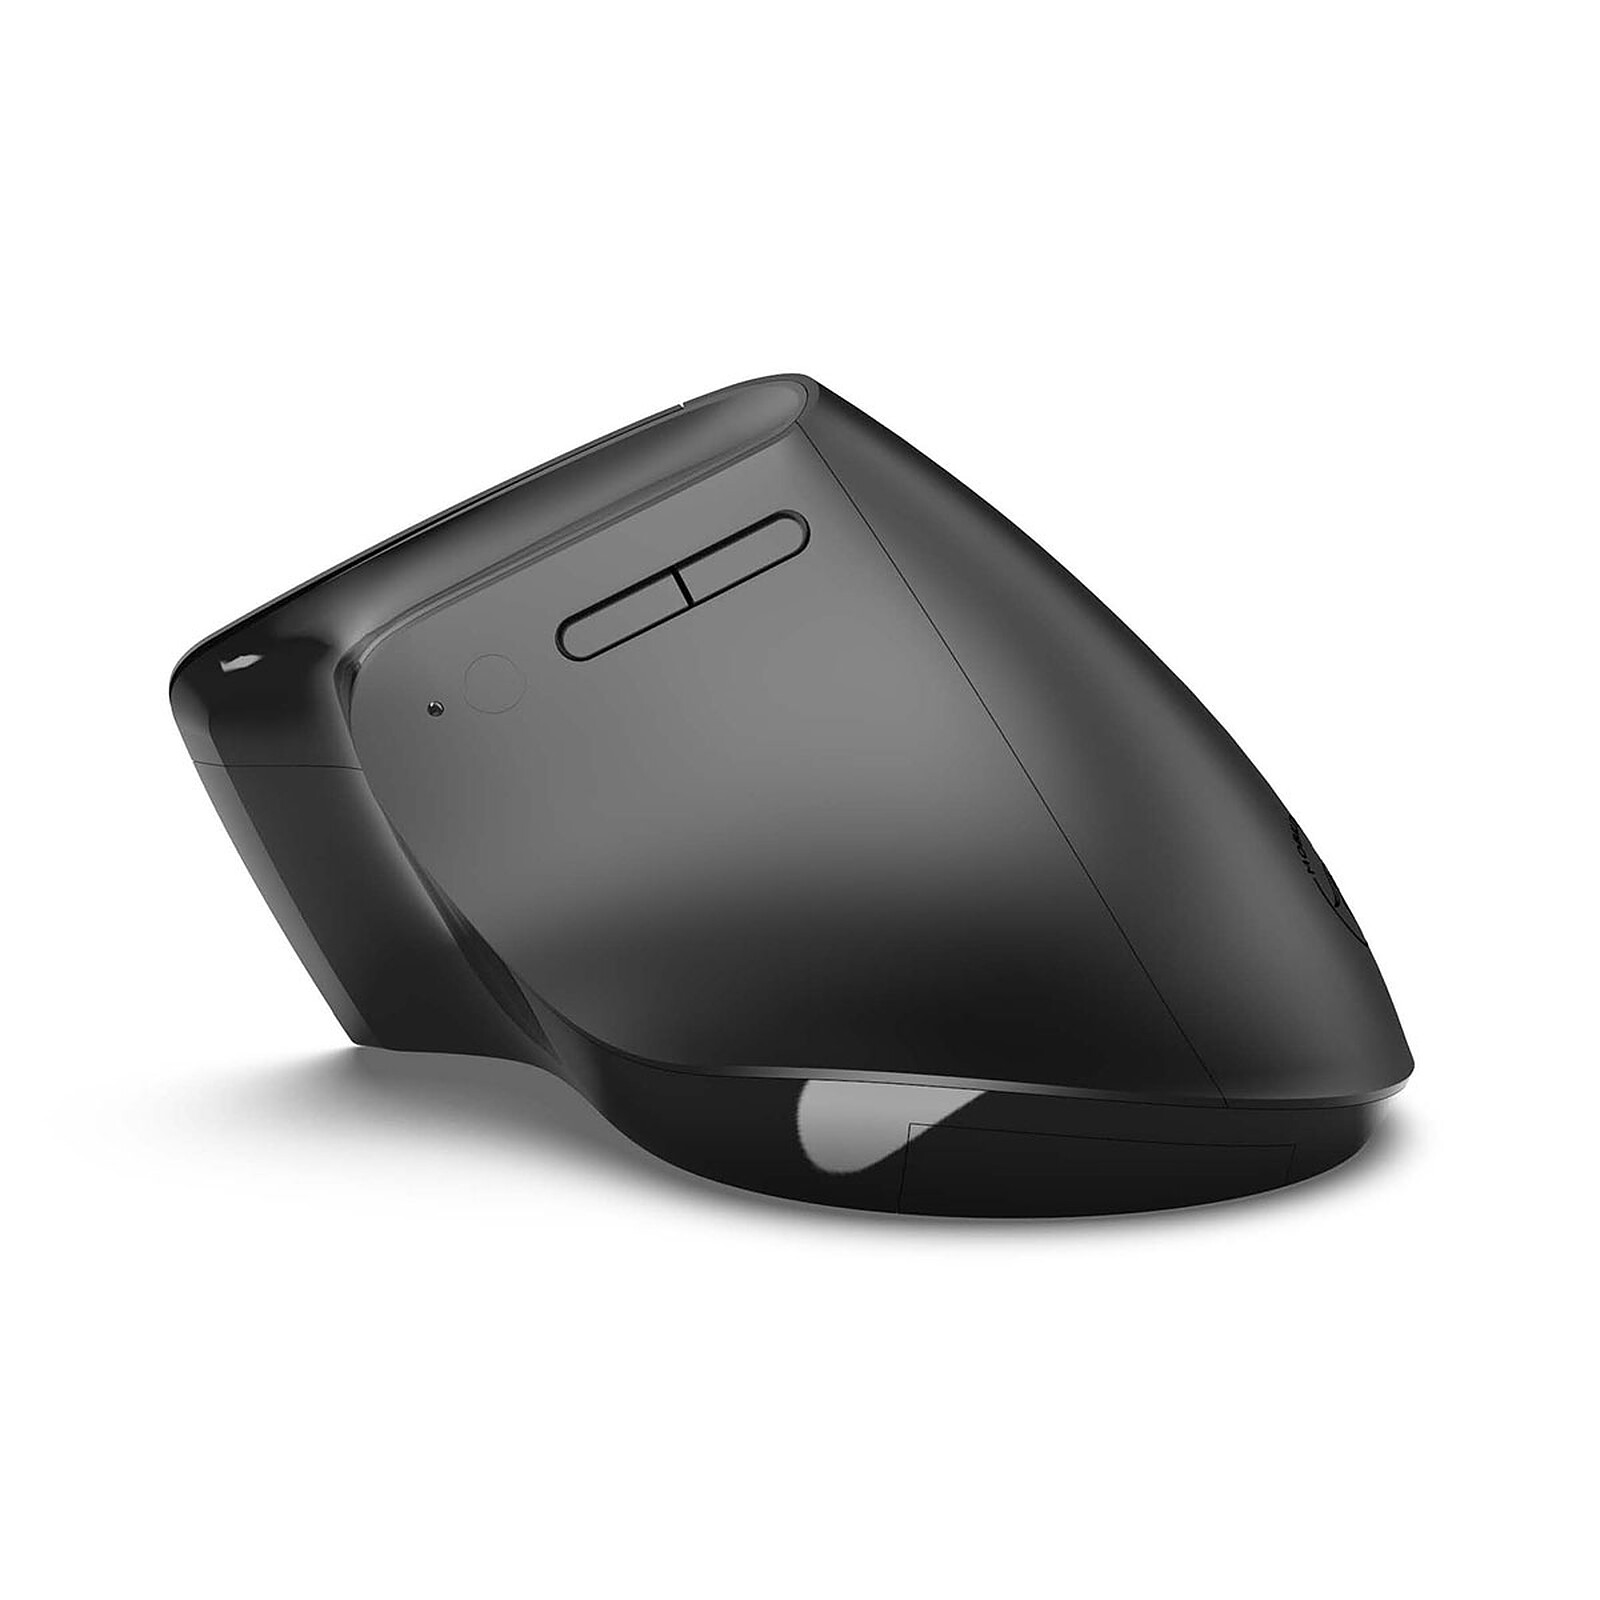 Mobility Lab Wireless USB-C Mouse - Souris PC - Garantie 3 ans LDLC